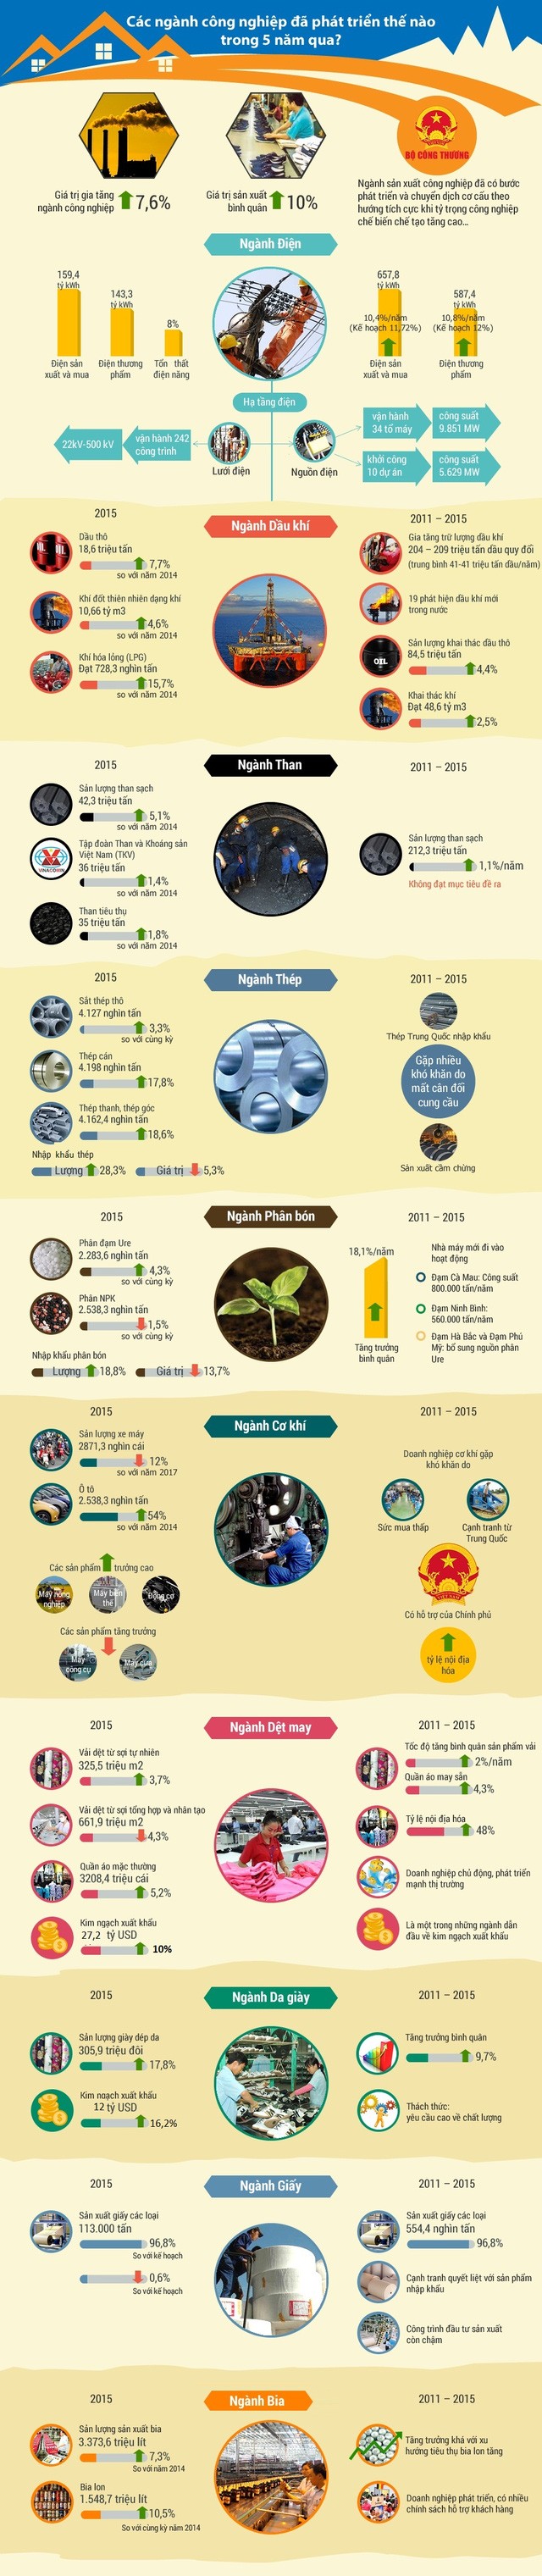 Các ngành công nghiệp chủ lực của Việt Nam đã phát triển thế nào trong 5 năm qua? ảnh 1